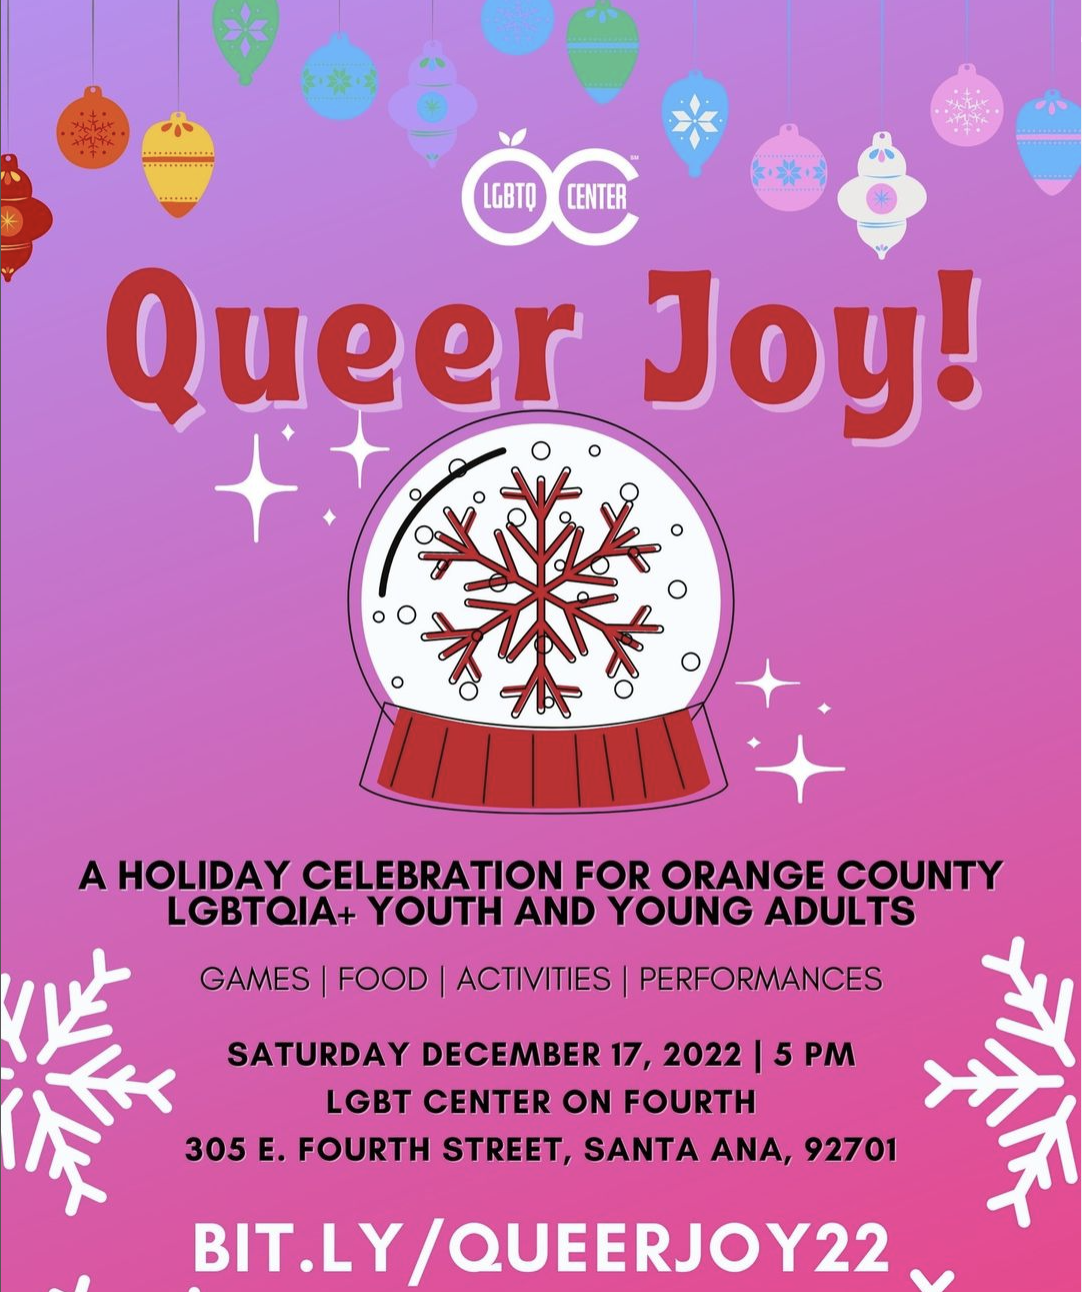 LGBTQ Center OC: Queer Joy!